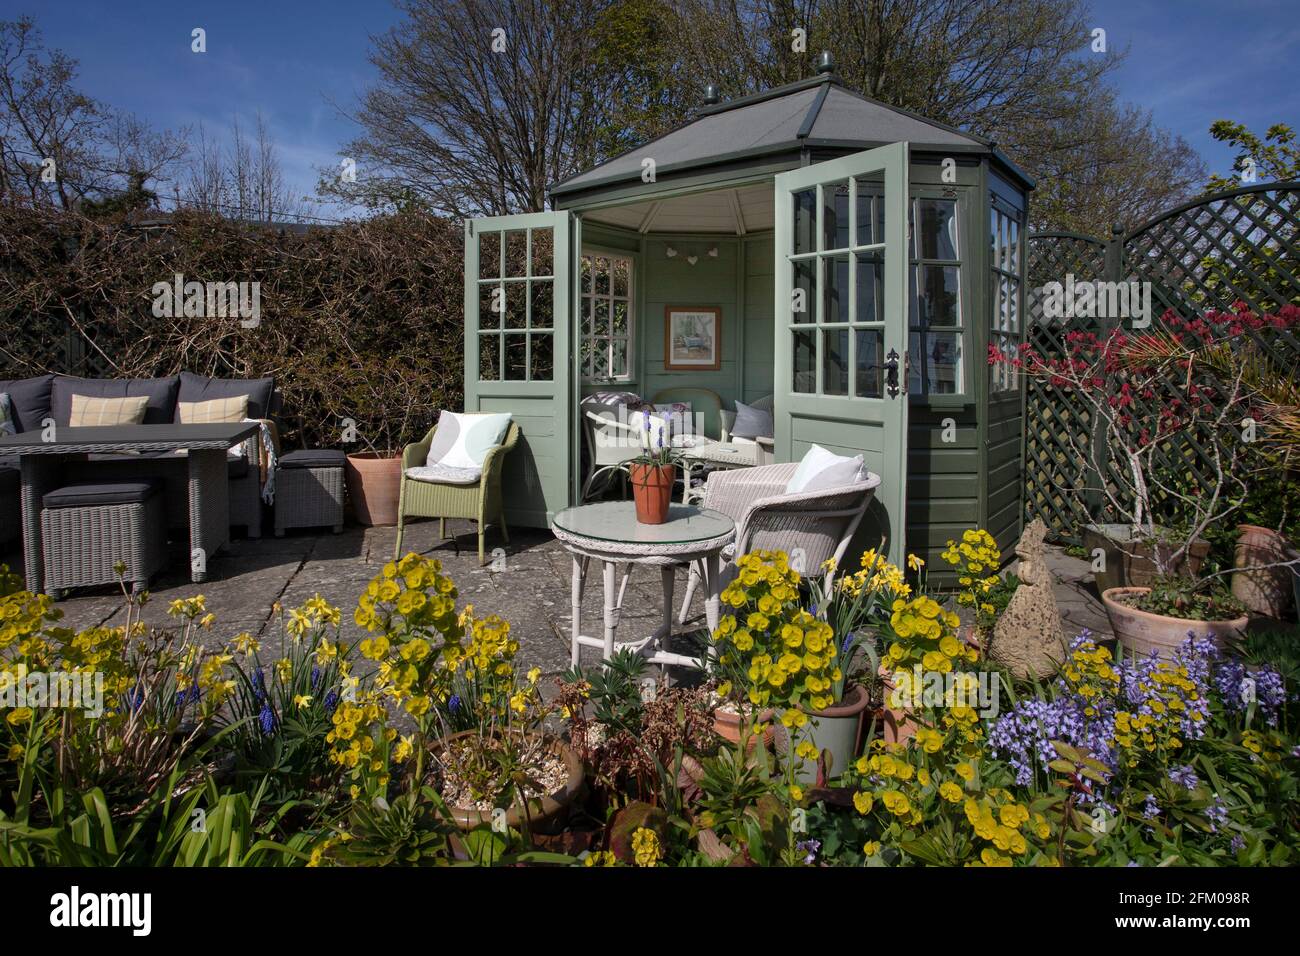 Wooden Summerhouse in Spring English Garden,England Stock Photo